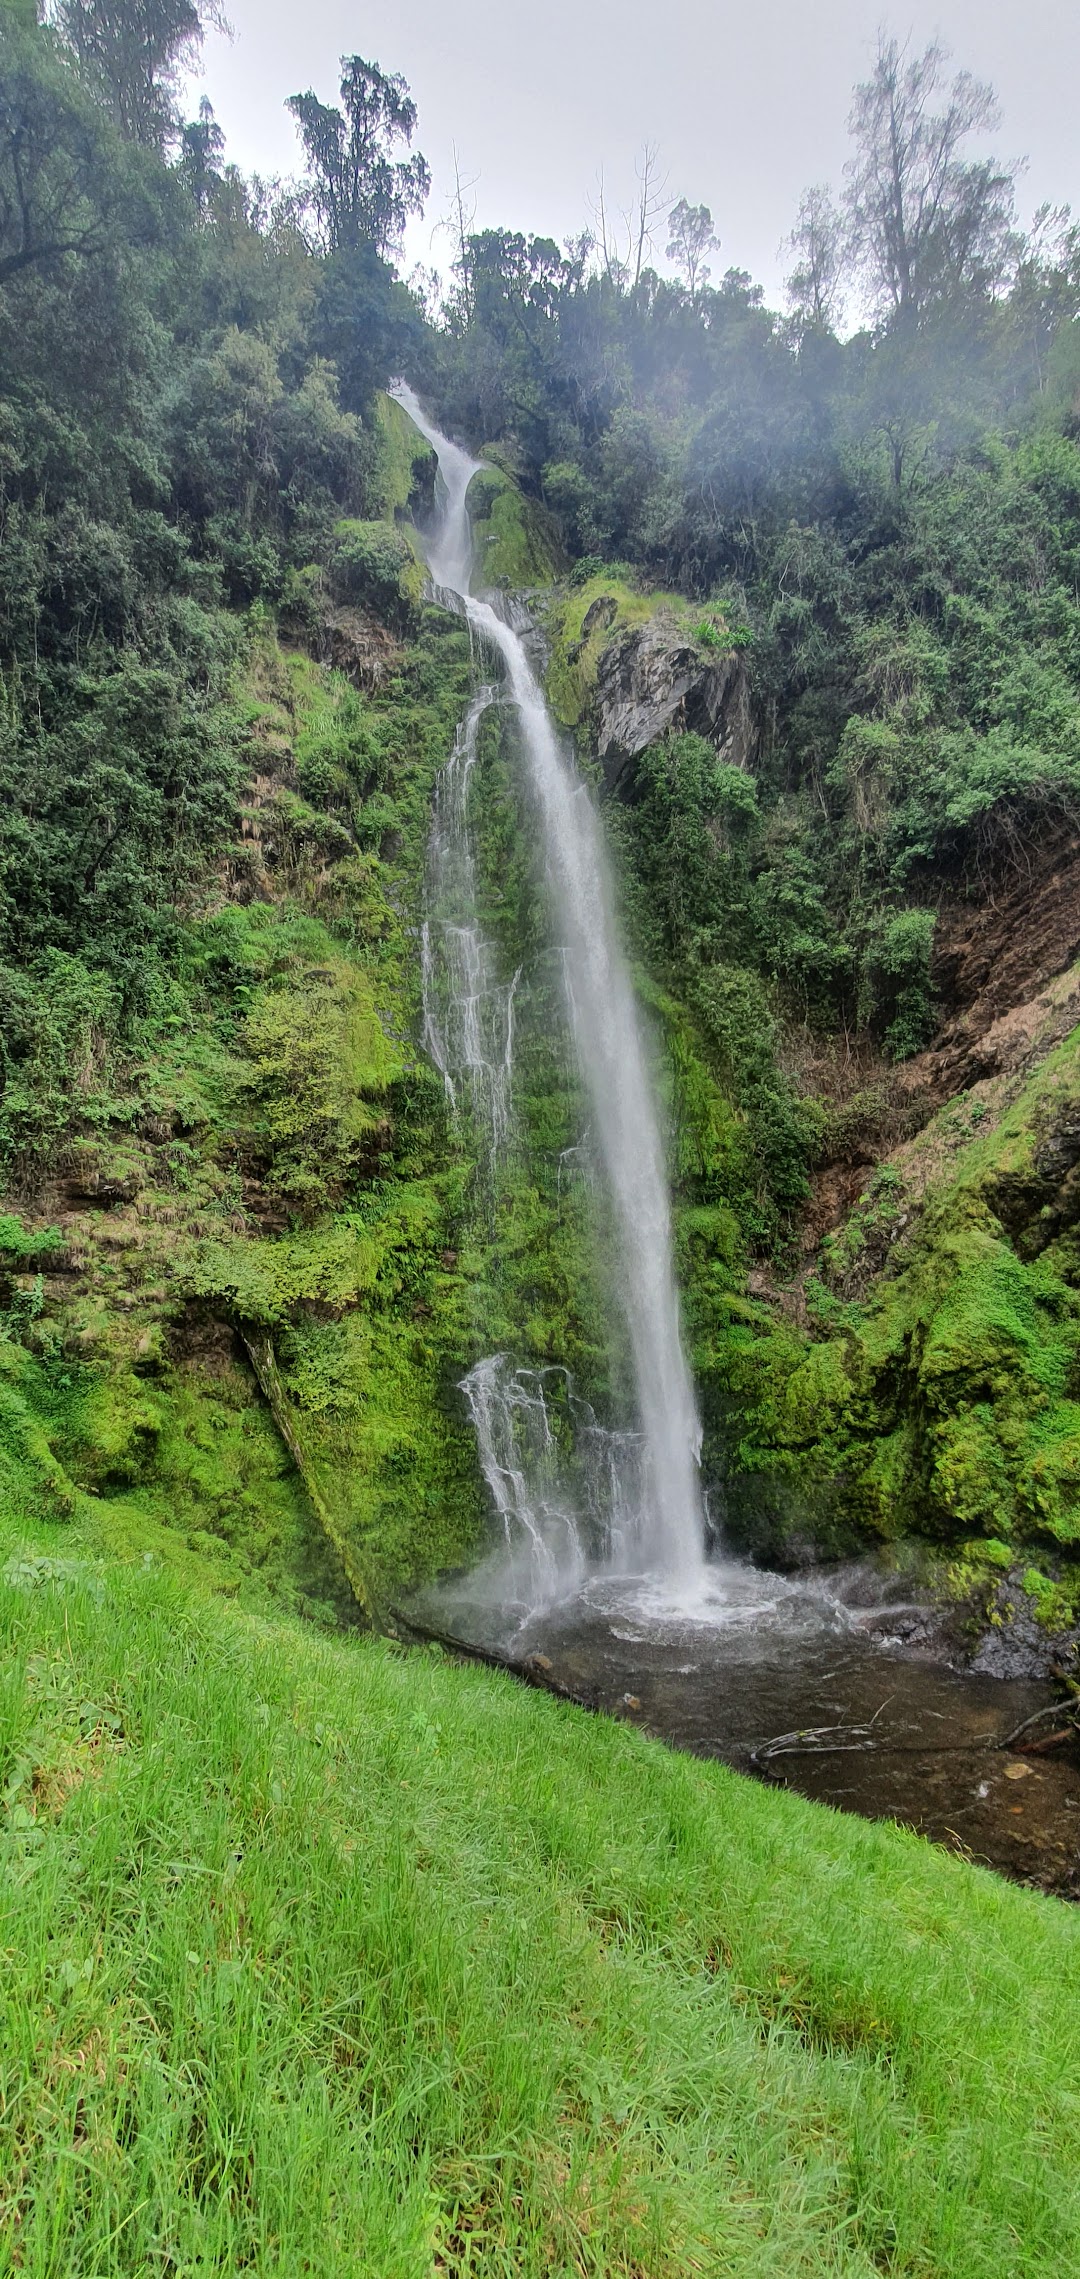 Nhumbe waterfalls